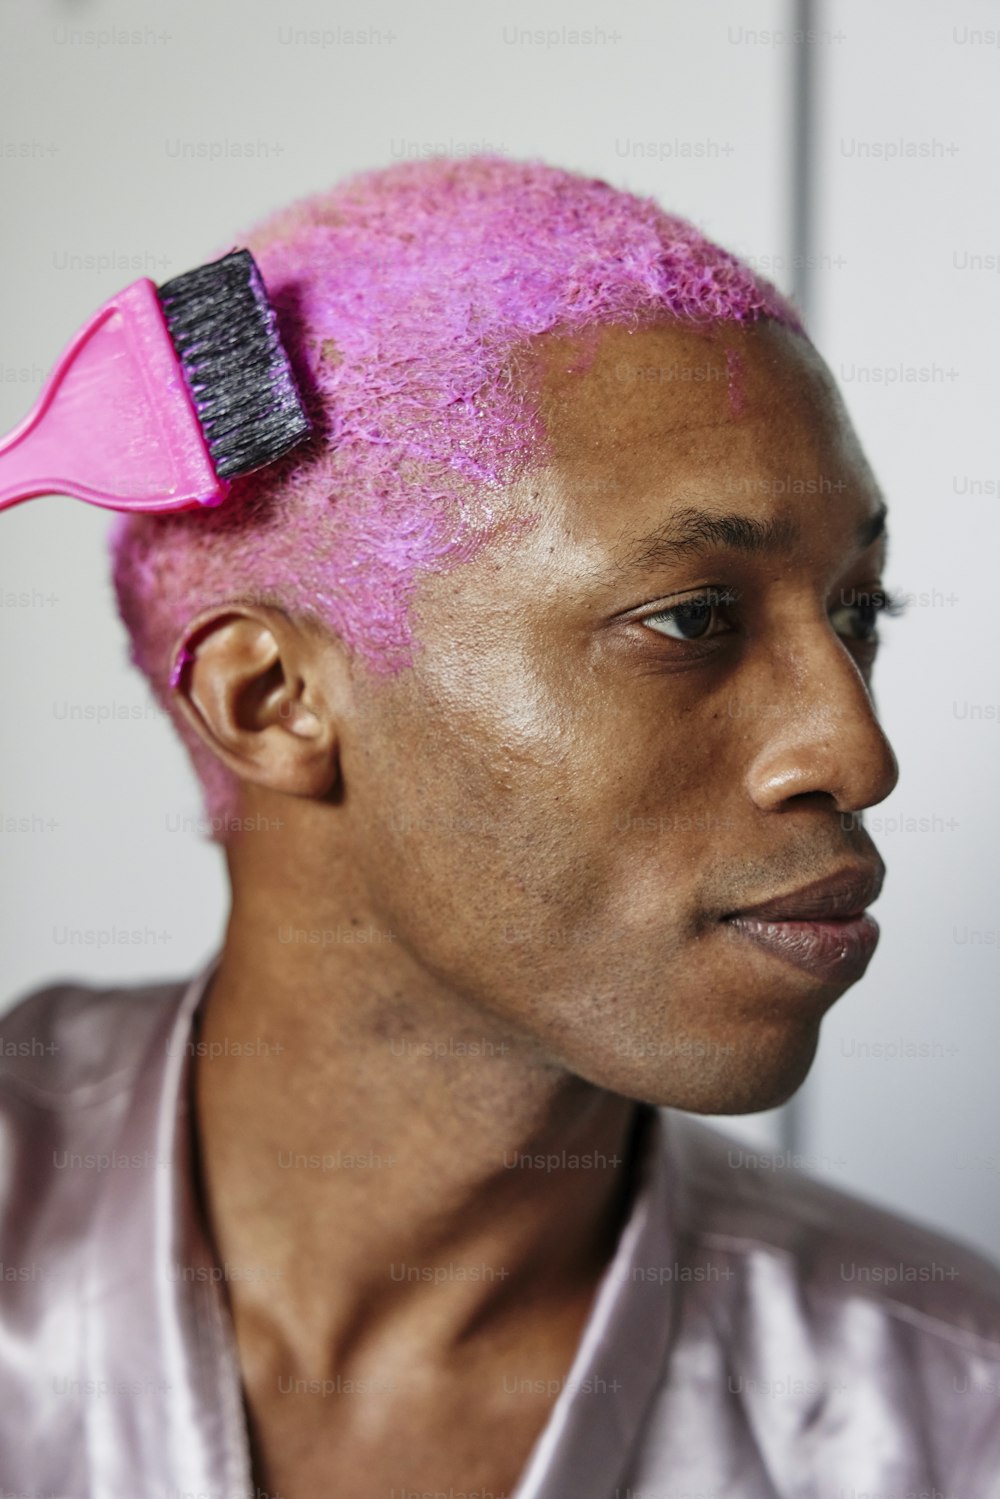 Un uomo con i capelli rosa e una spazzola tra i capelli